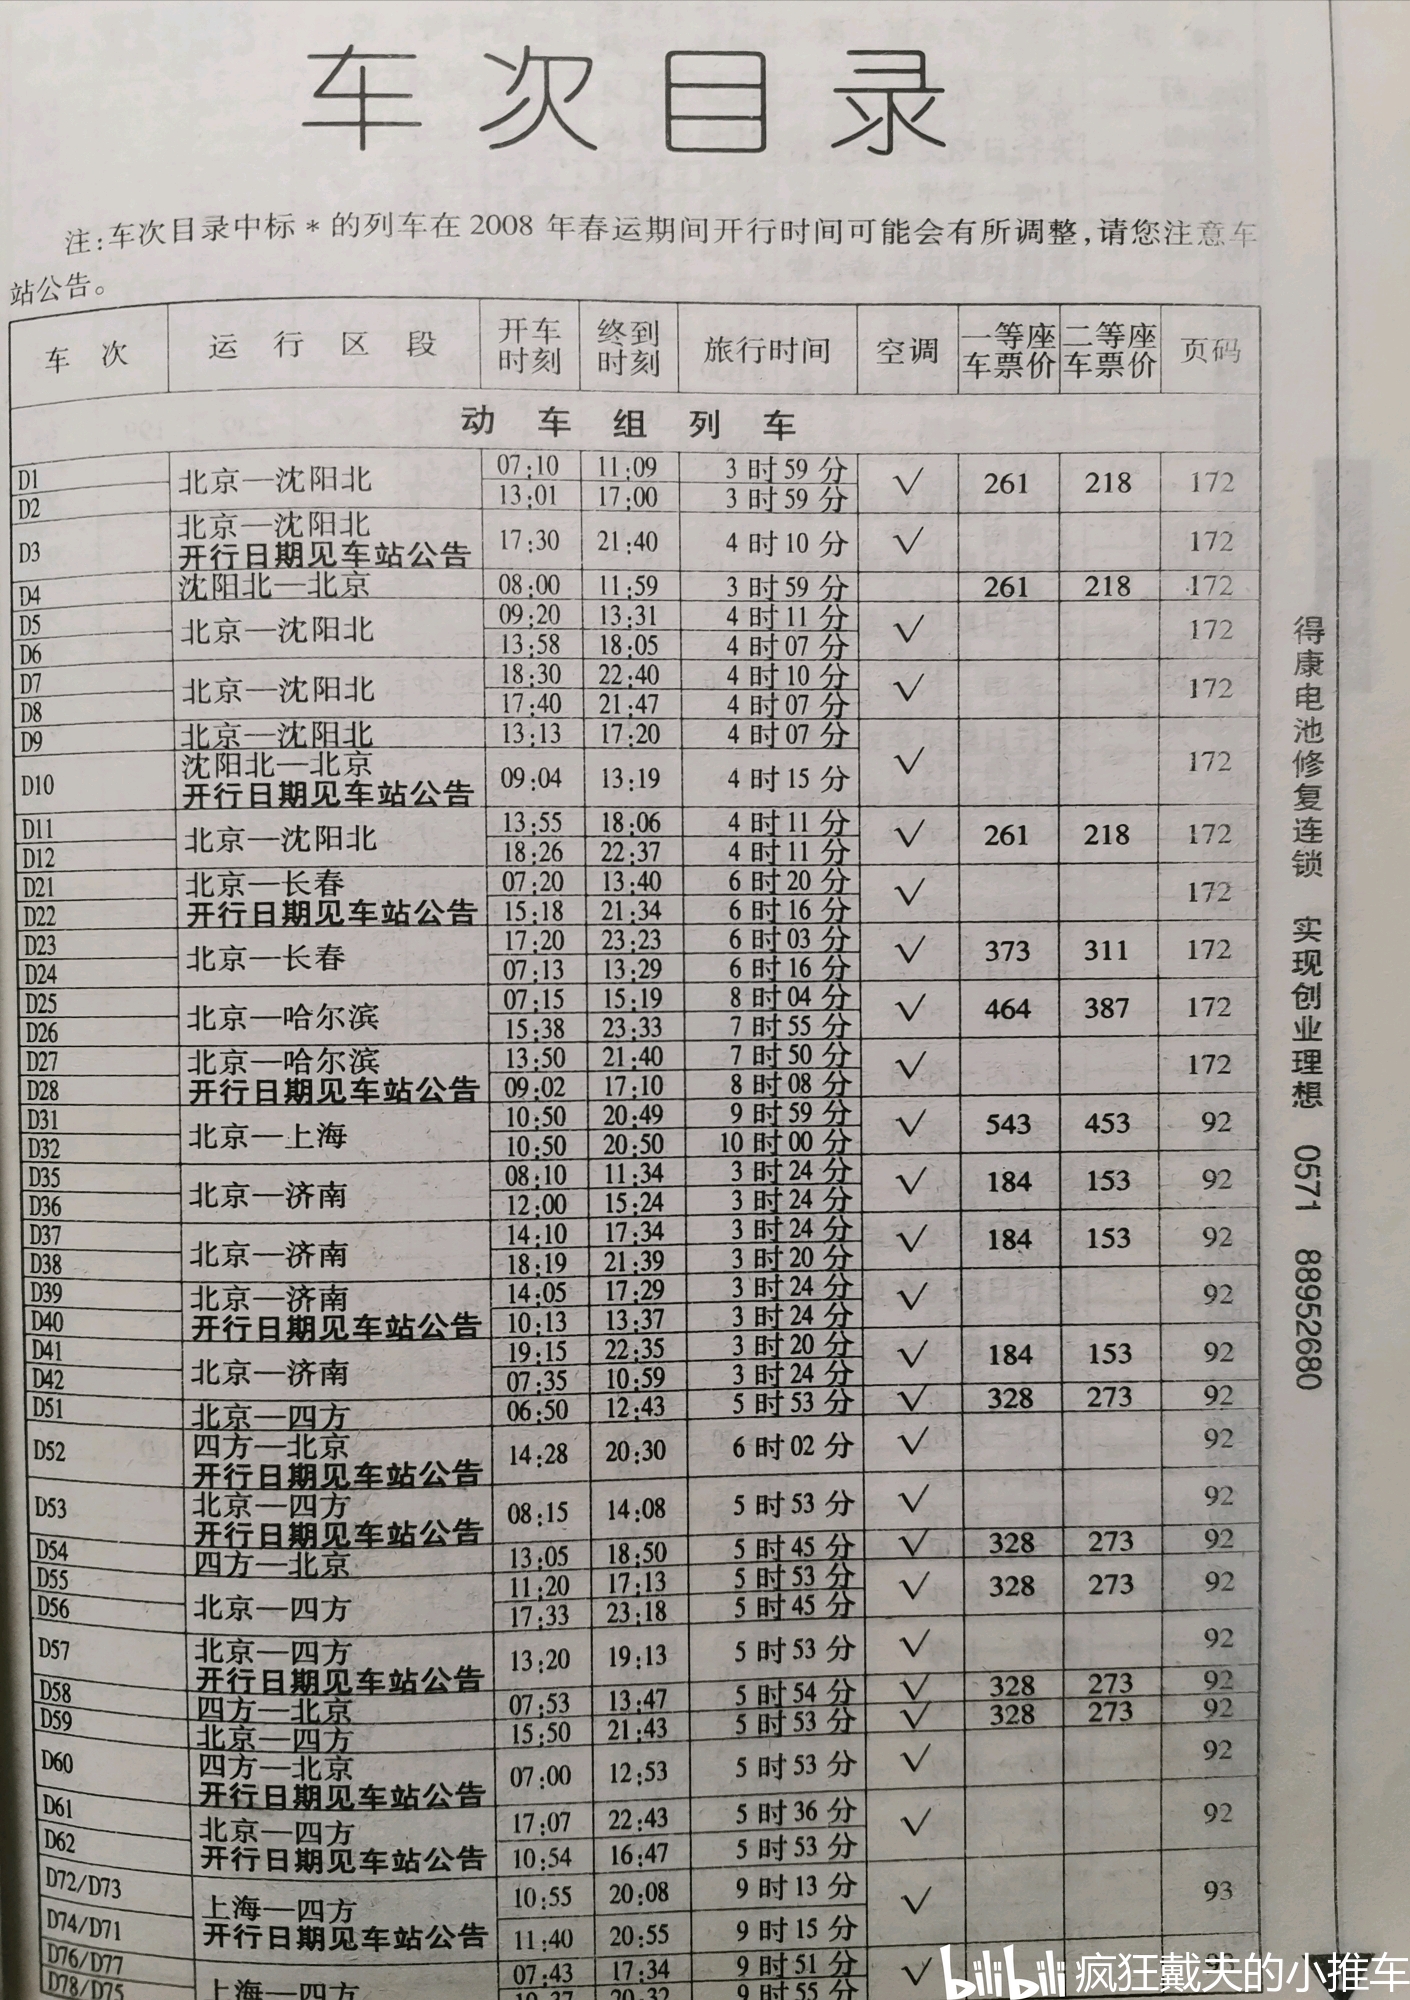 【北京地铁】2020年4月15日至4月17日1号线建国门站列车时刻表 - 哔哩哔哩